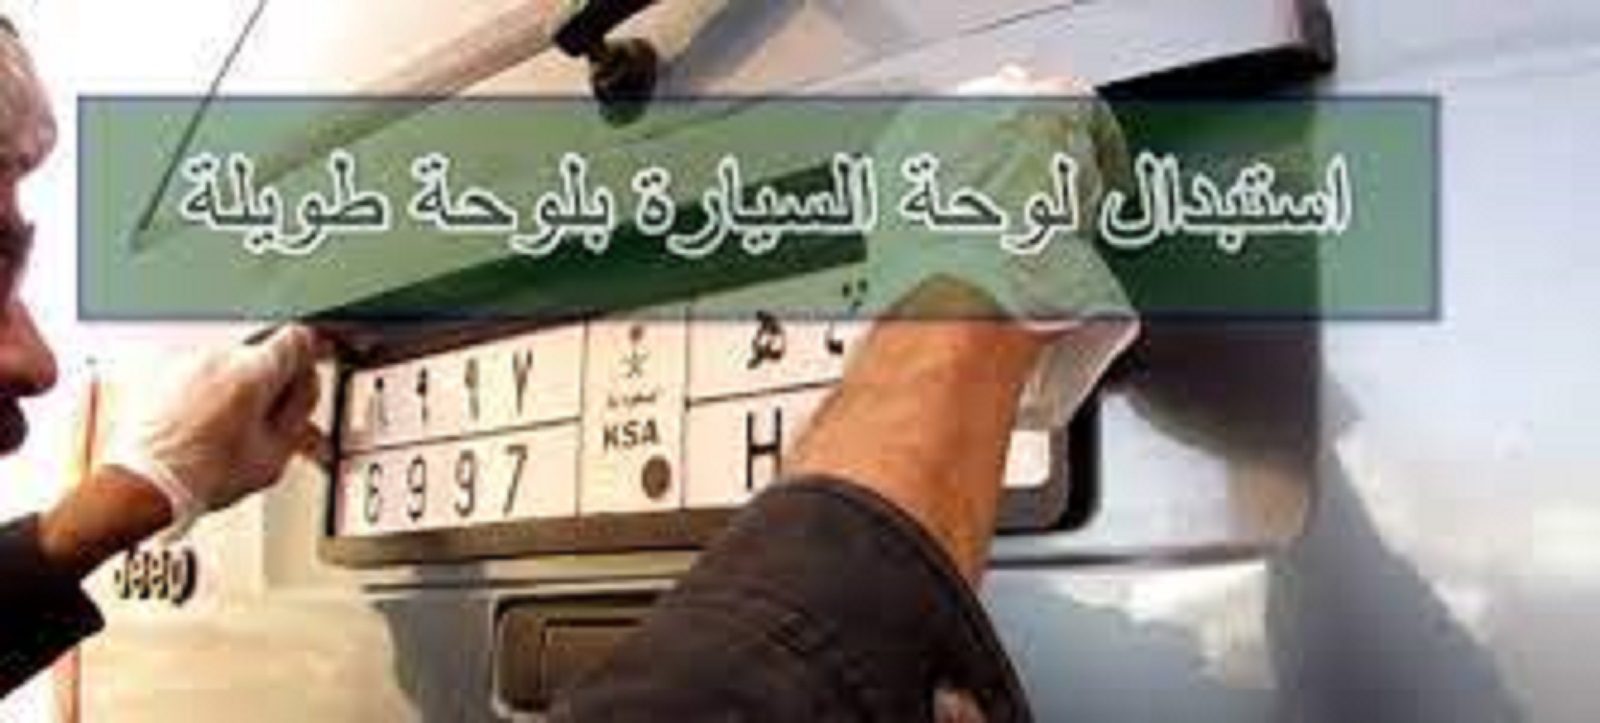 مقالة  : “المرور السعودي” يعلن عن رسوم استبدال لوحة السيارة 1445 والمستندات المطلوبة